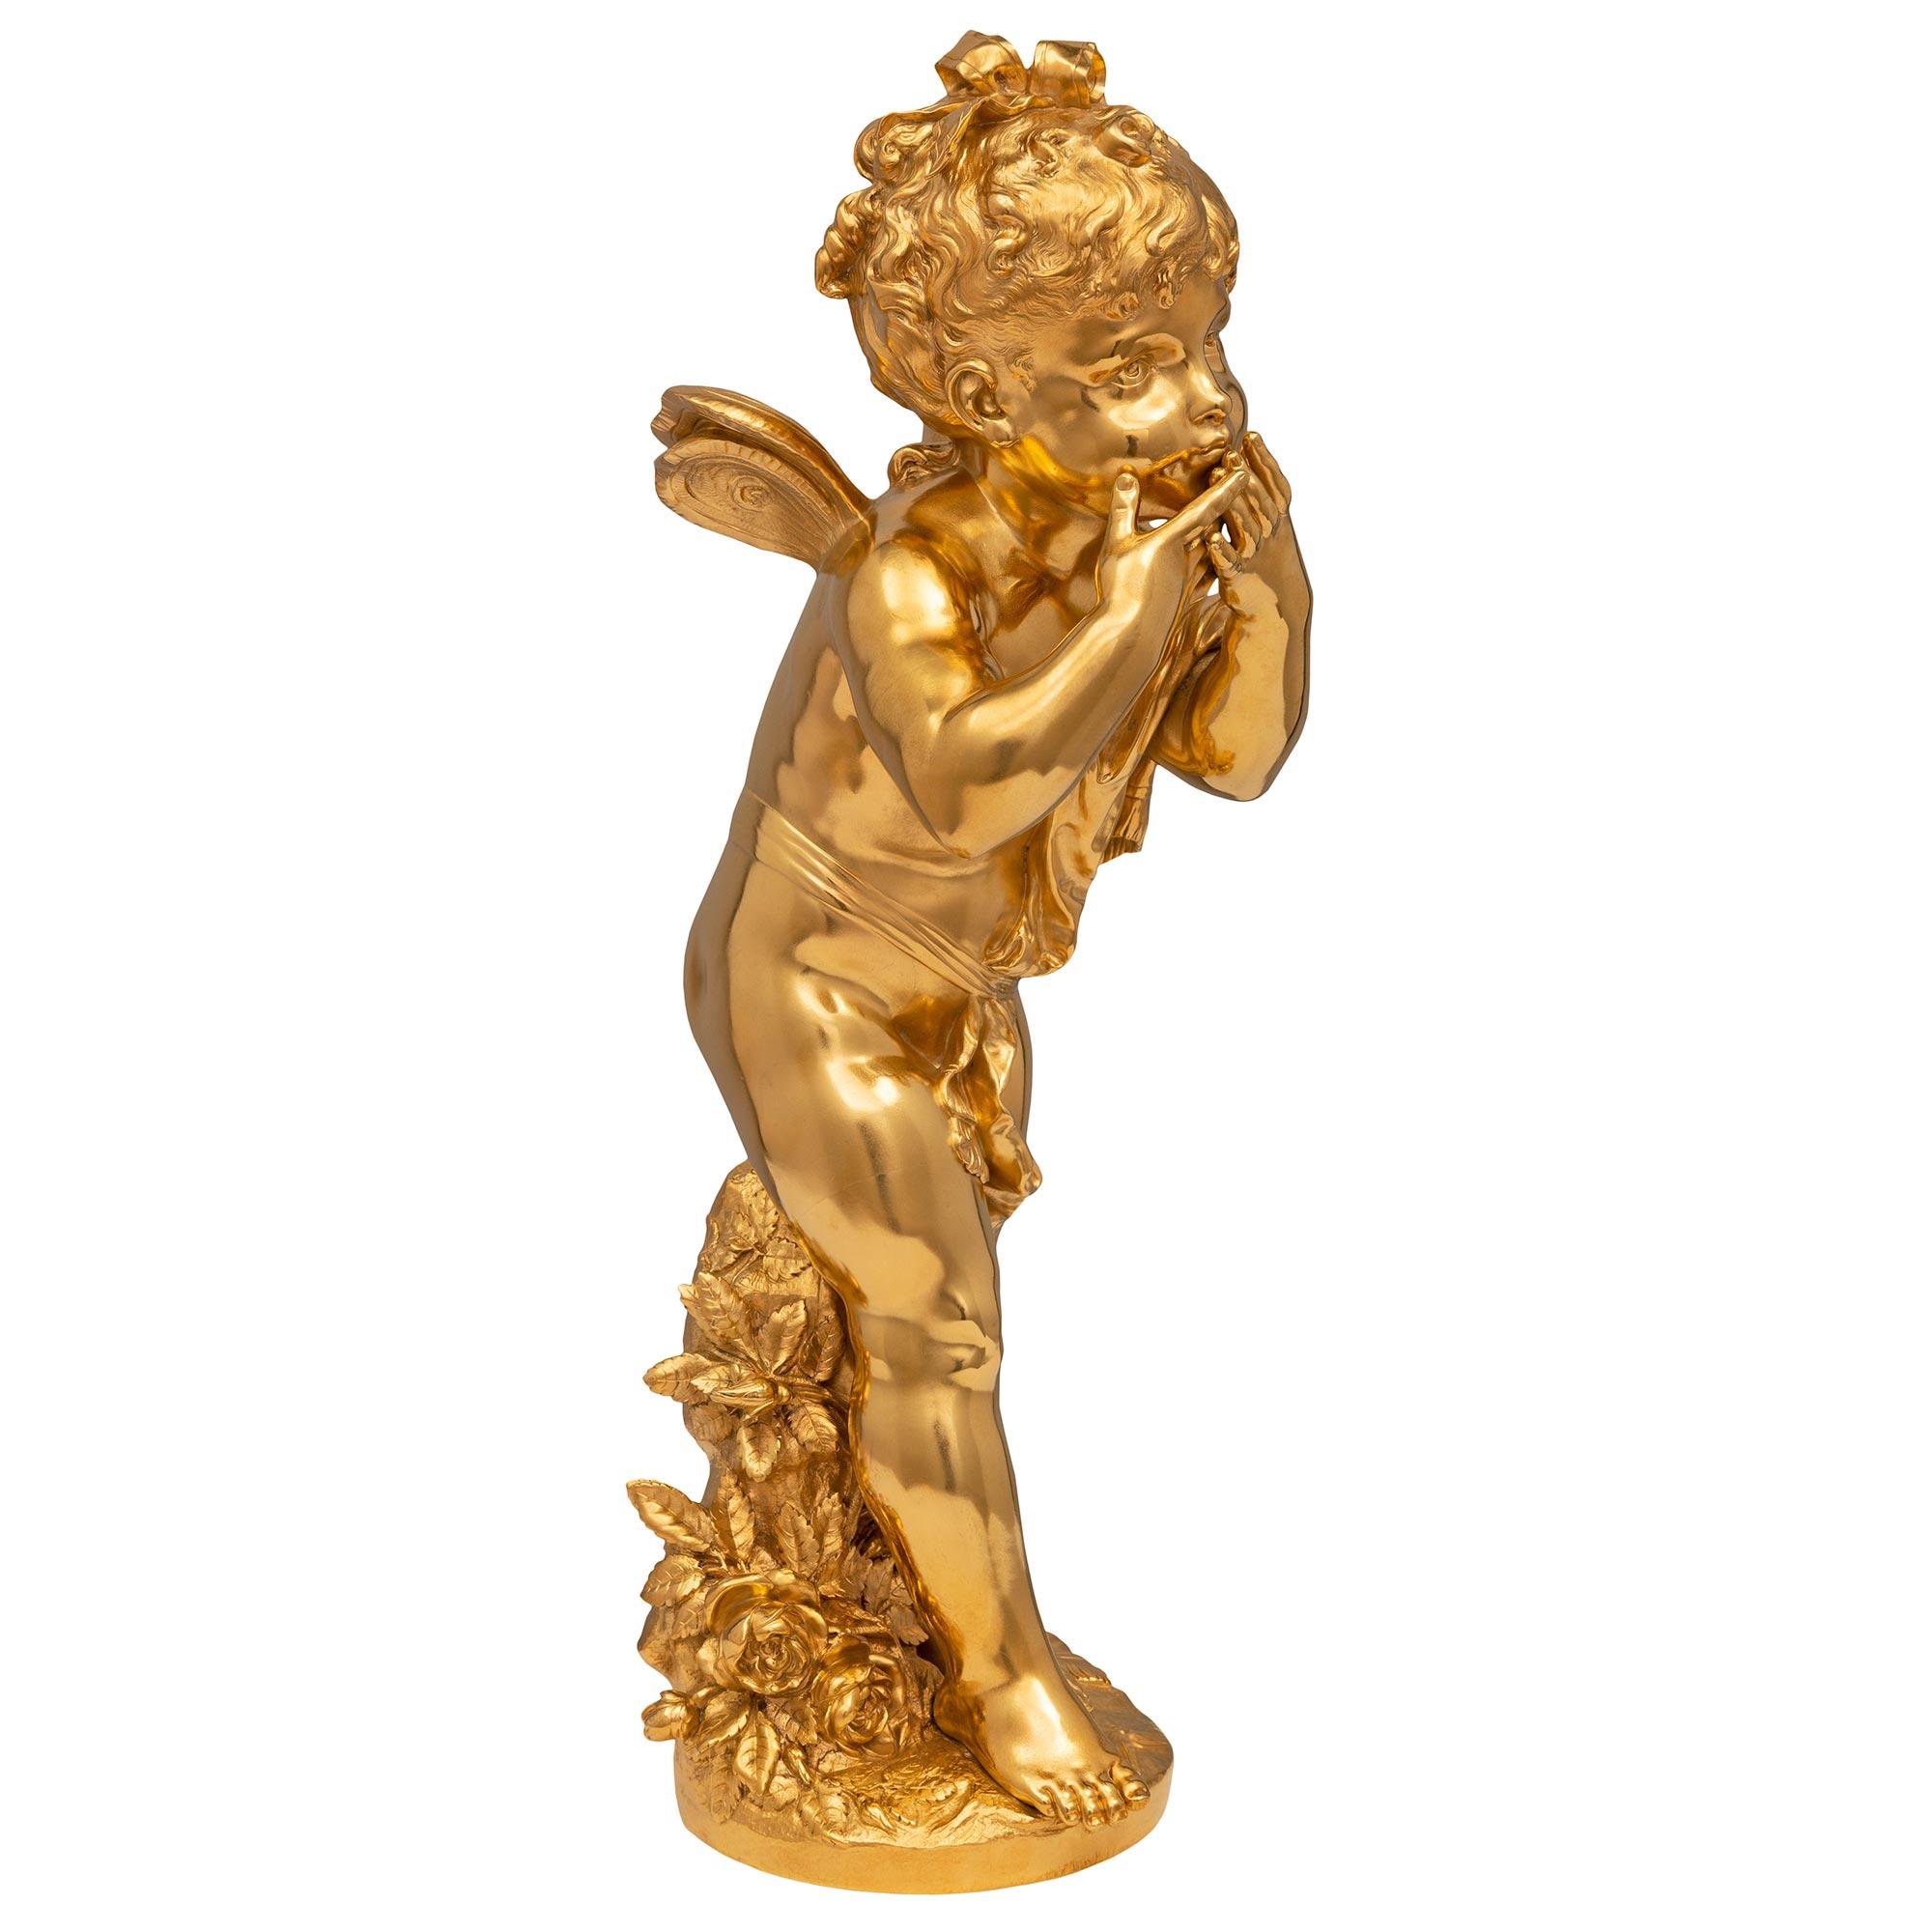 Très belle statue en bronze doré de très haute qualité, datant du XIXe siècle, de style Louis XVI et de la Belle Époque, signée par Auguste Moreau. La statue intitulée 